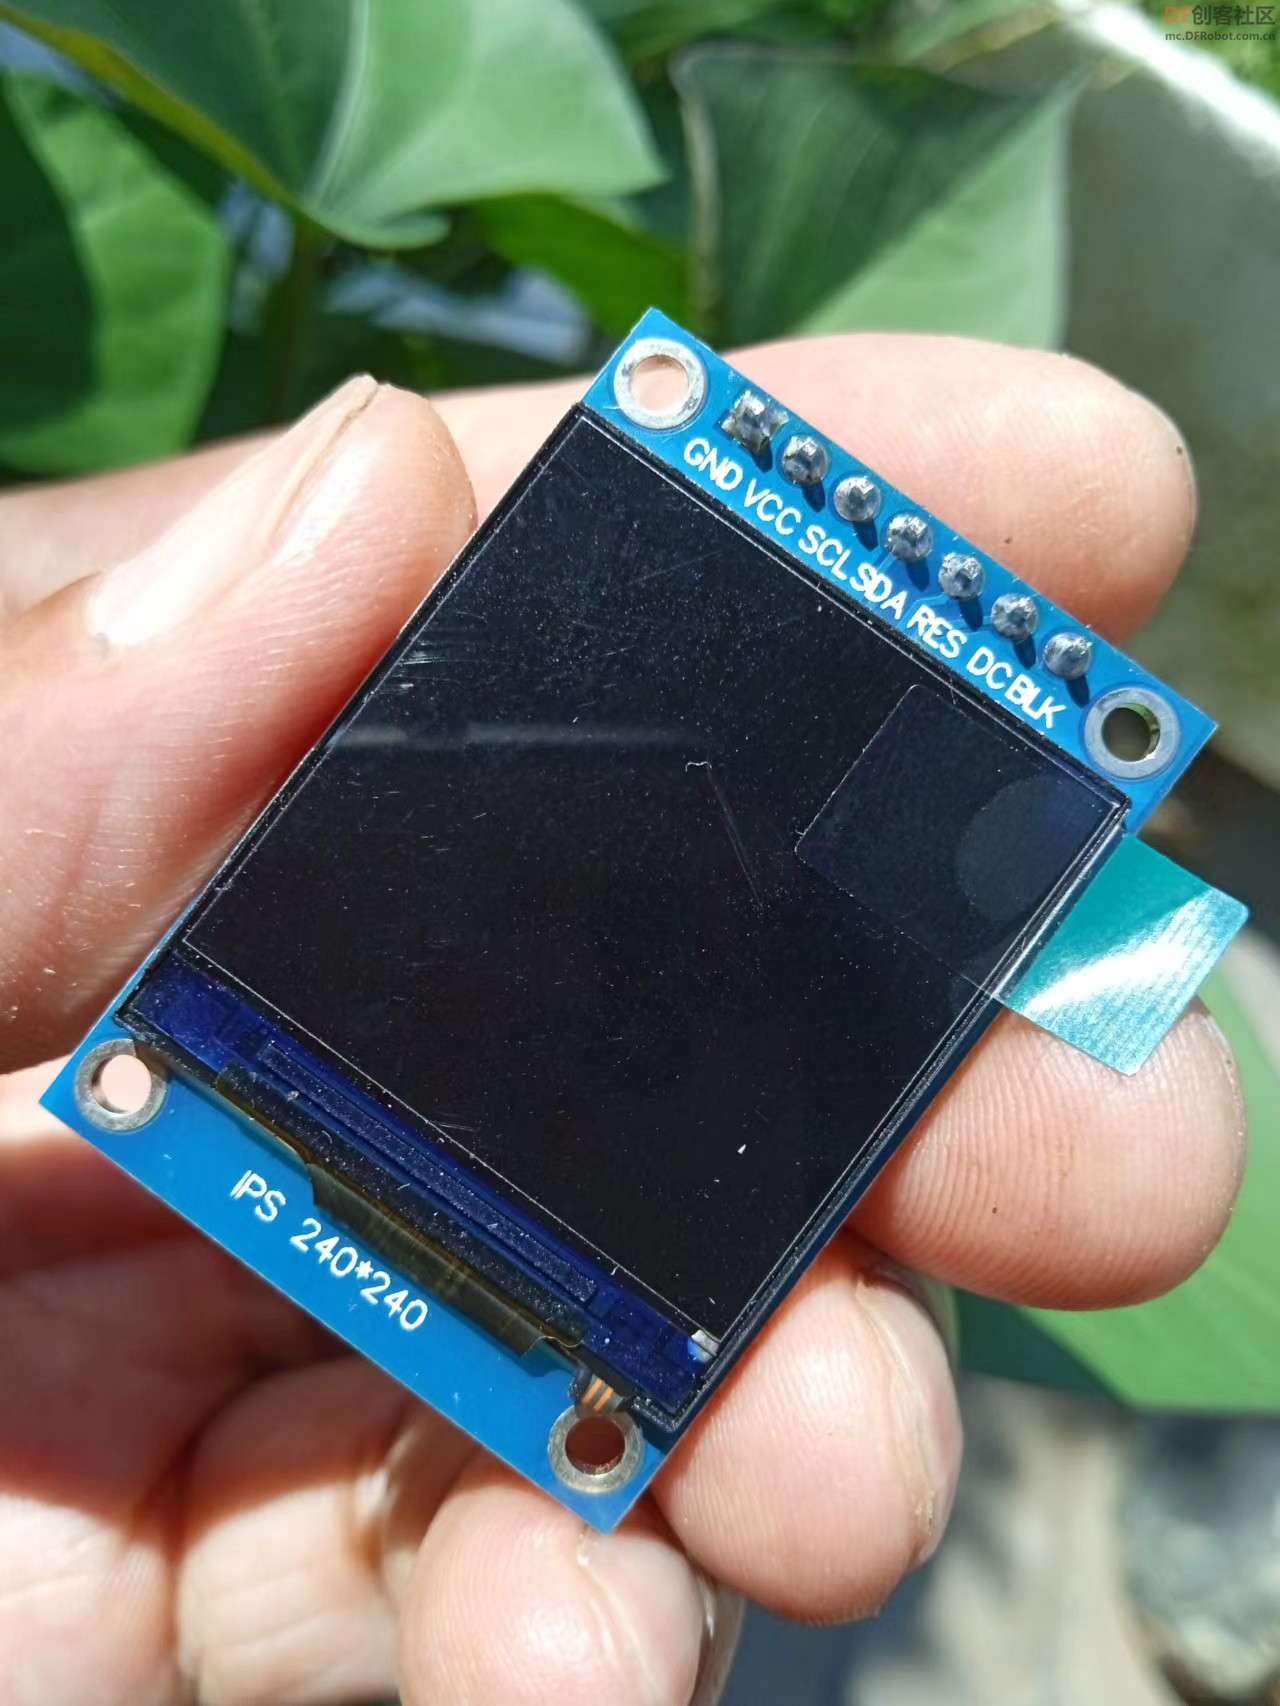 【Arduino】168种传感器模块系列实验（218）--- 1.3寸 TFT显示屏图1